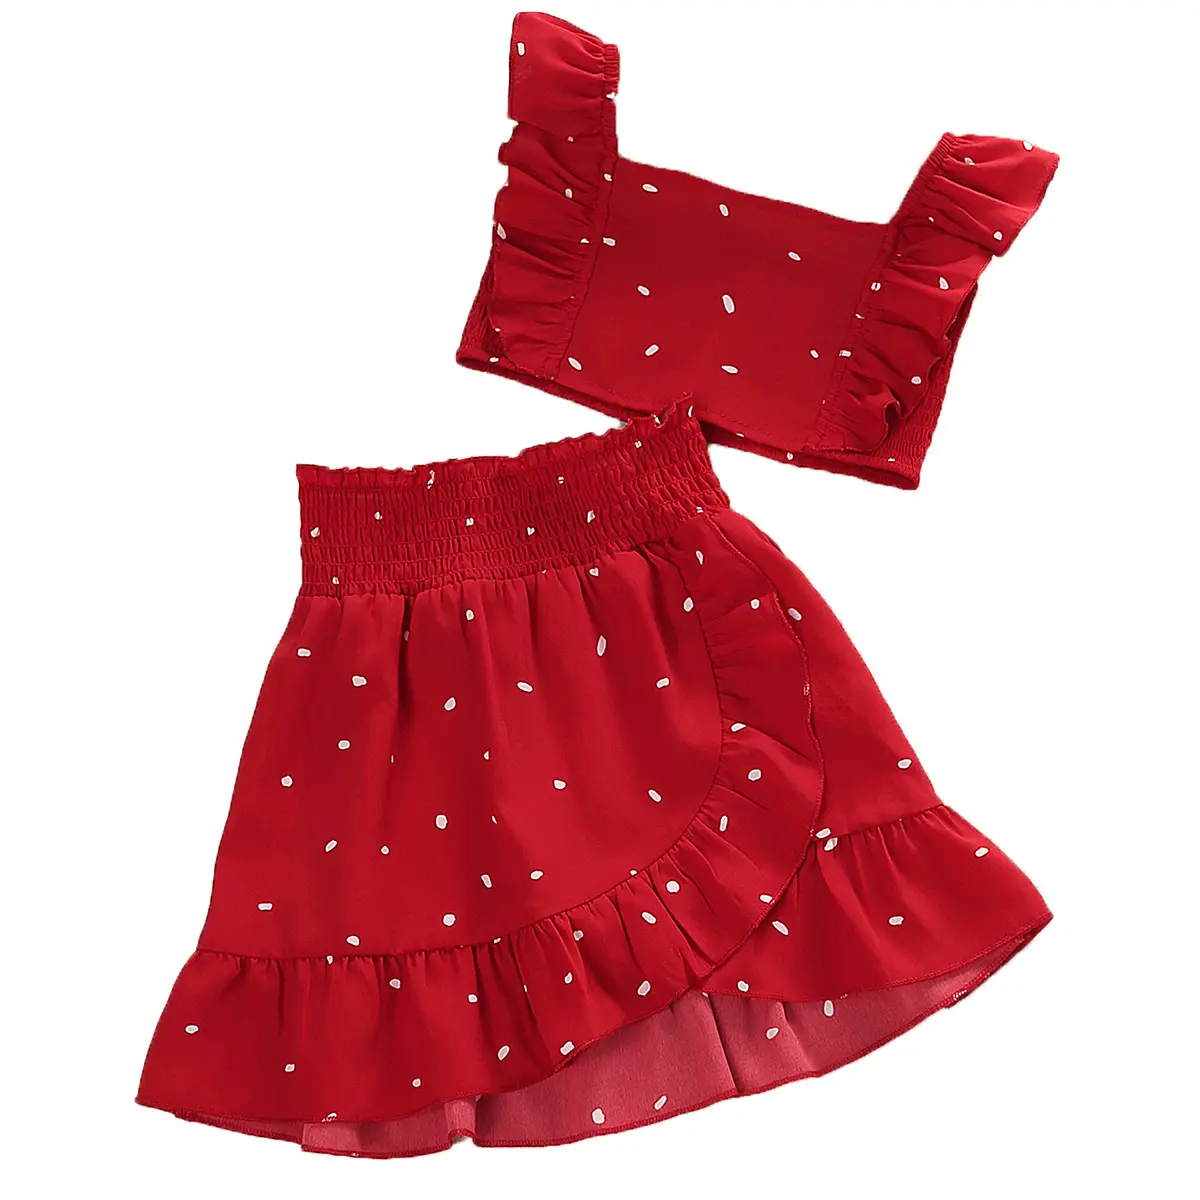 Kız takım elbise 2023 yaz yeni kısa etek giyim toptan bebek elbise kız çocuk etekleri çocuk elbiseleri tasarımları çocuklar kıyafet setleri